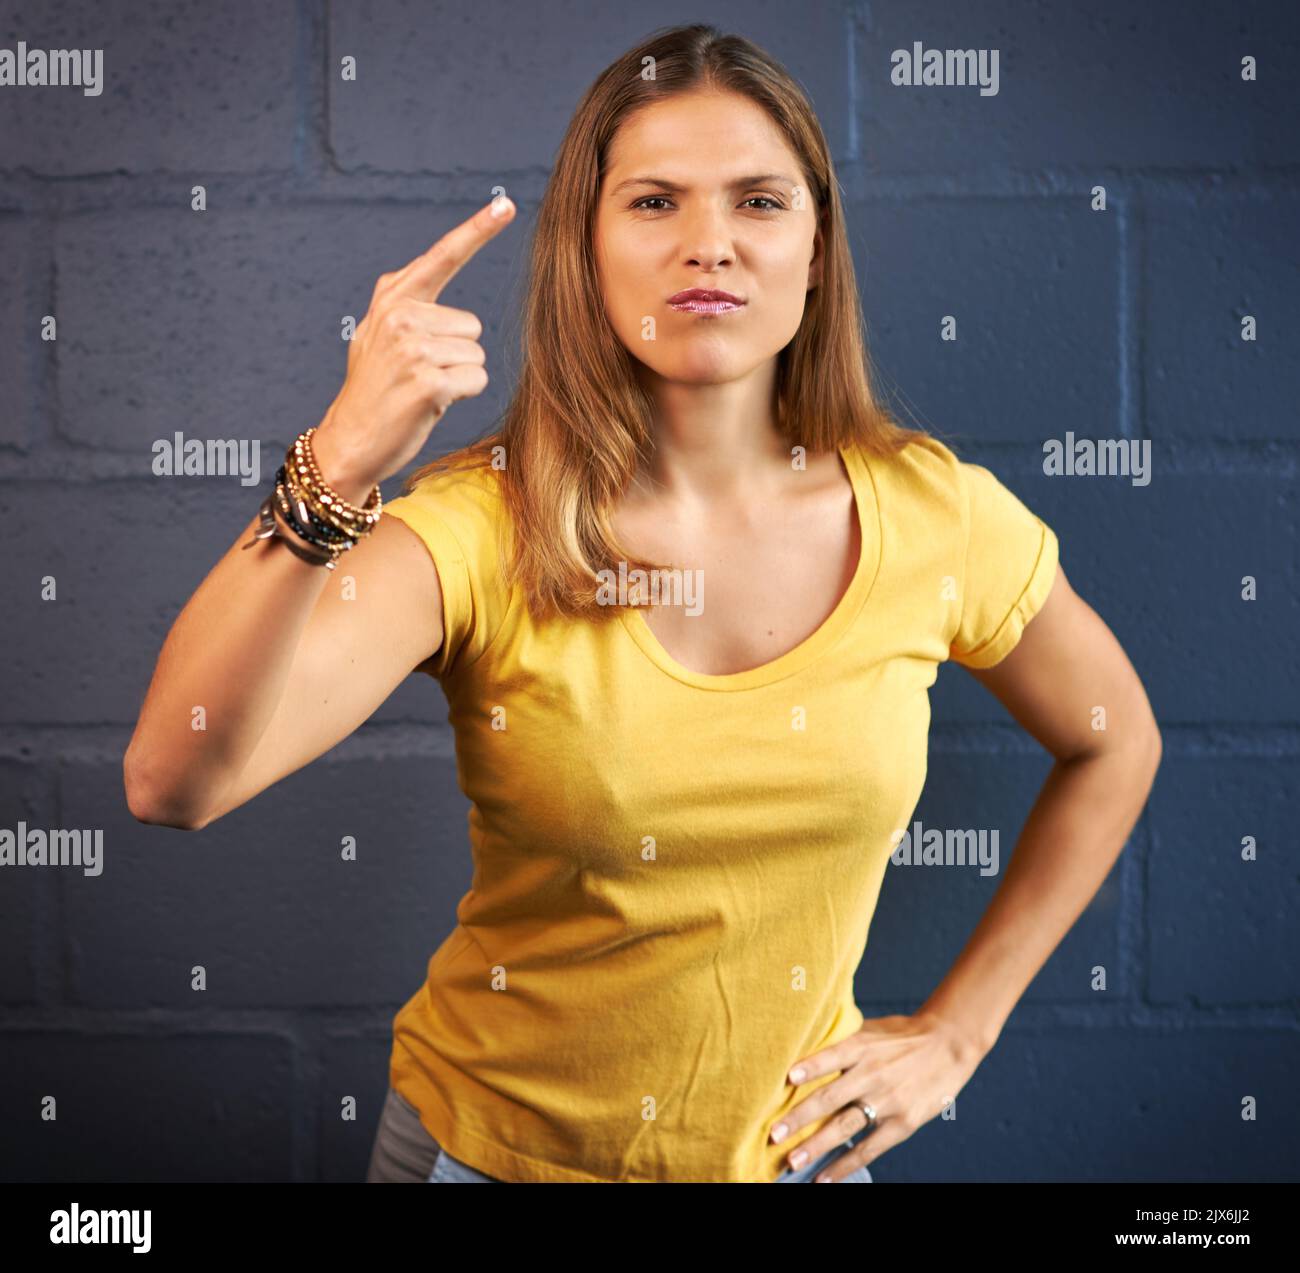 Nicht cool. Beschnittenes Porträt einer jungen Frau, die wütend auf einen Backsteinwand-Hintergrund schaut. Stockfoto